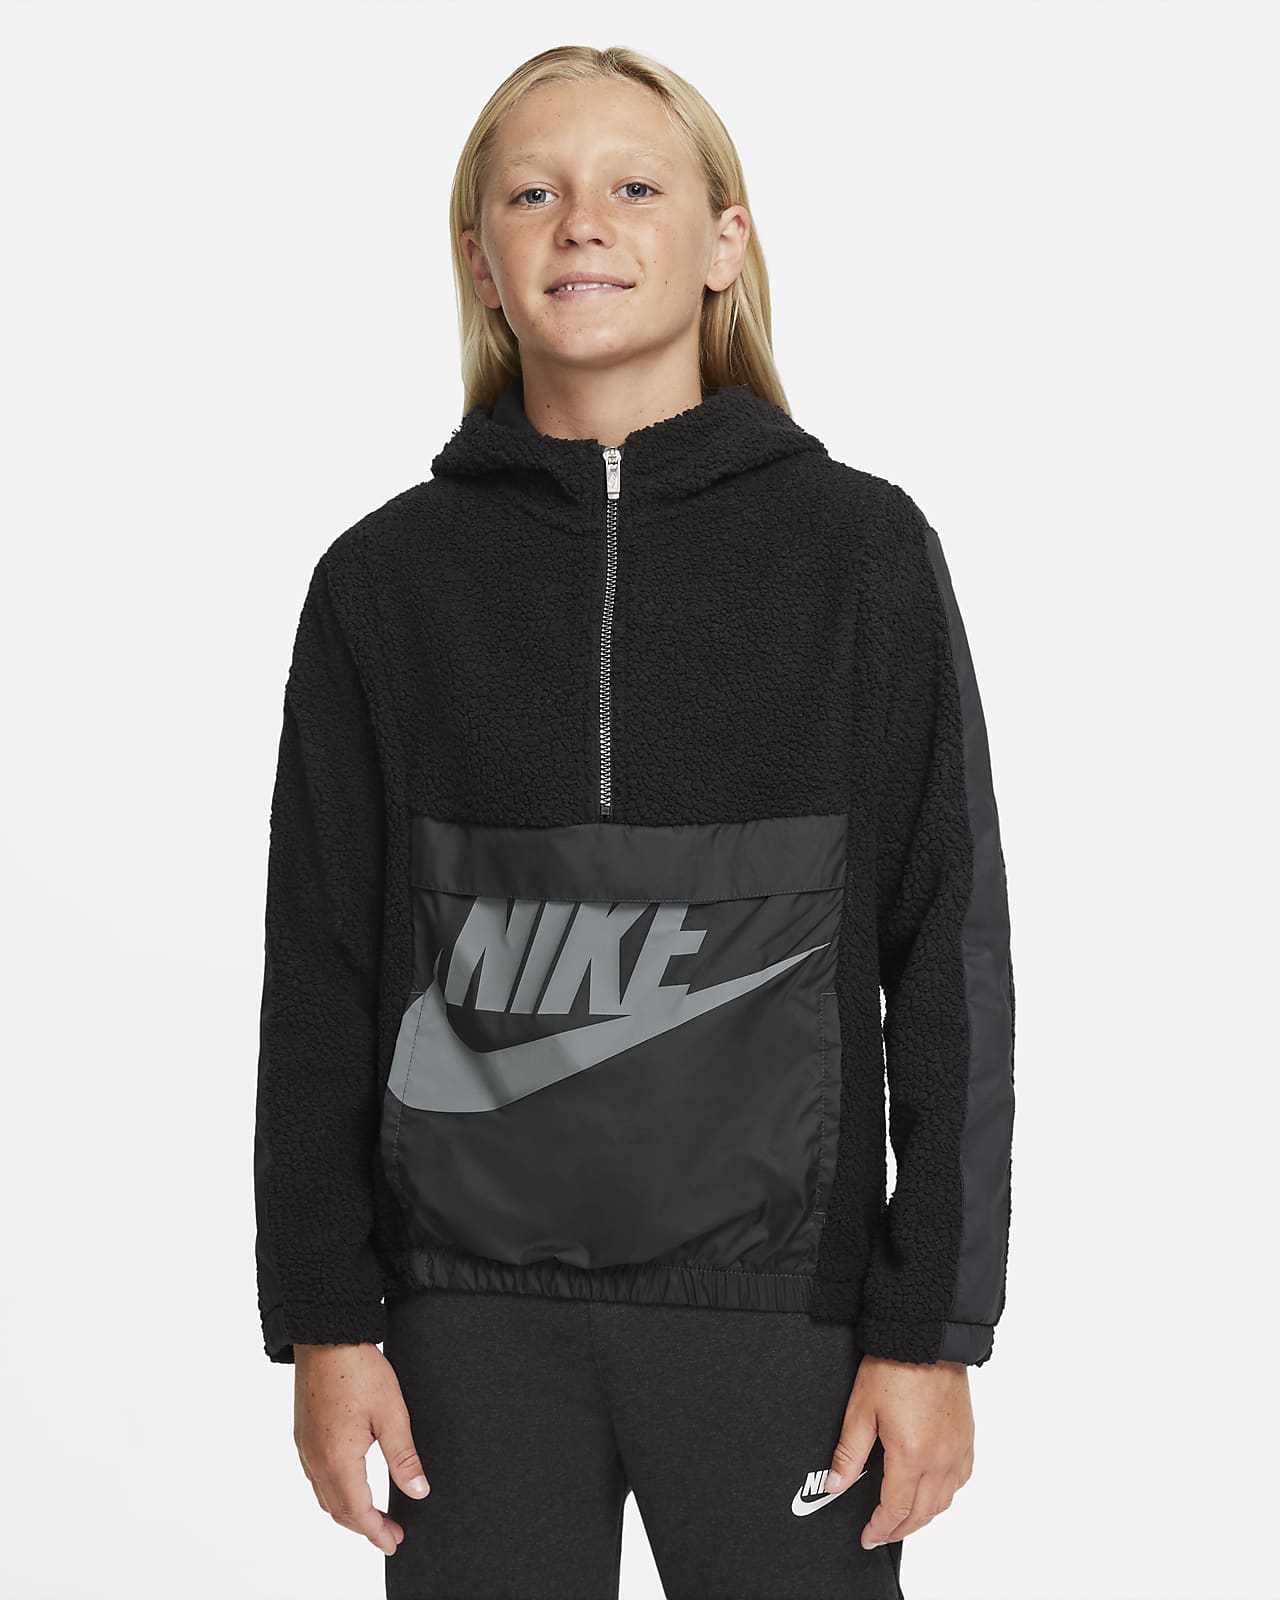 Felpa con cappuccio e zip a metà lunghezza per l'inverno Nike Sportswear - Ragazzo